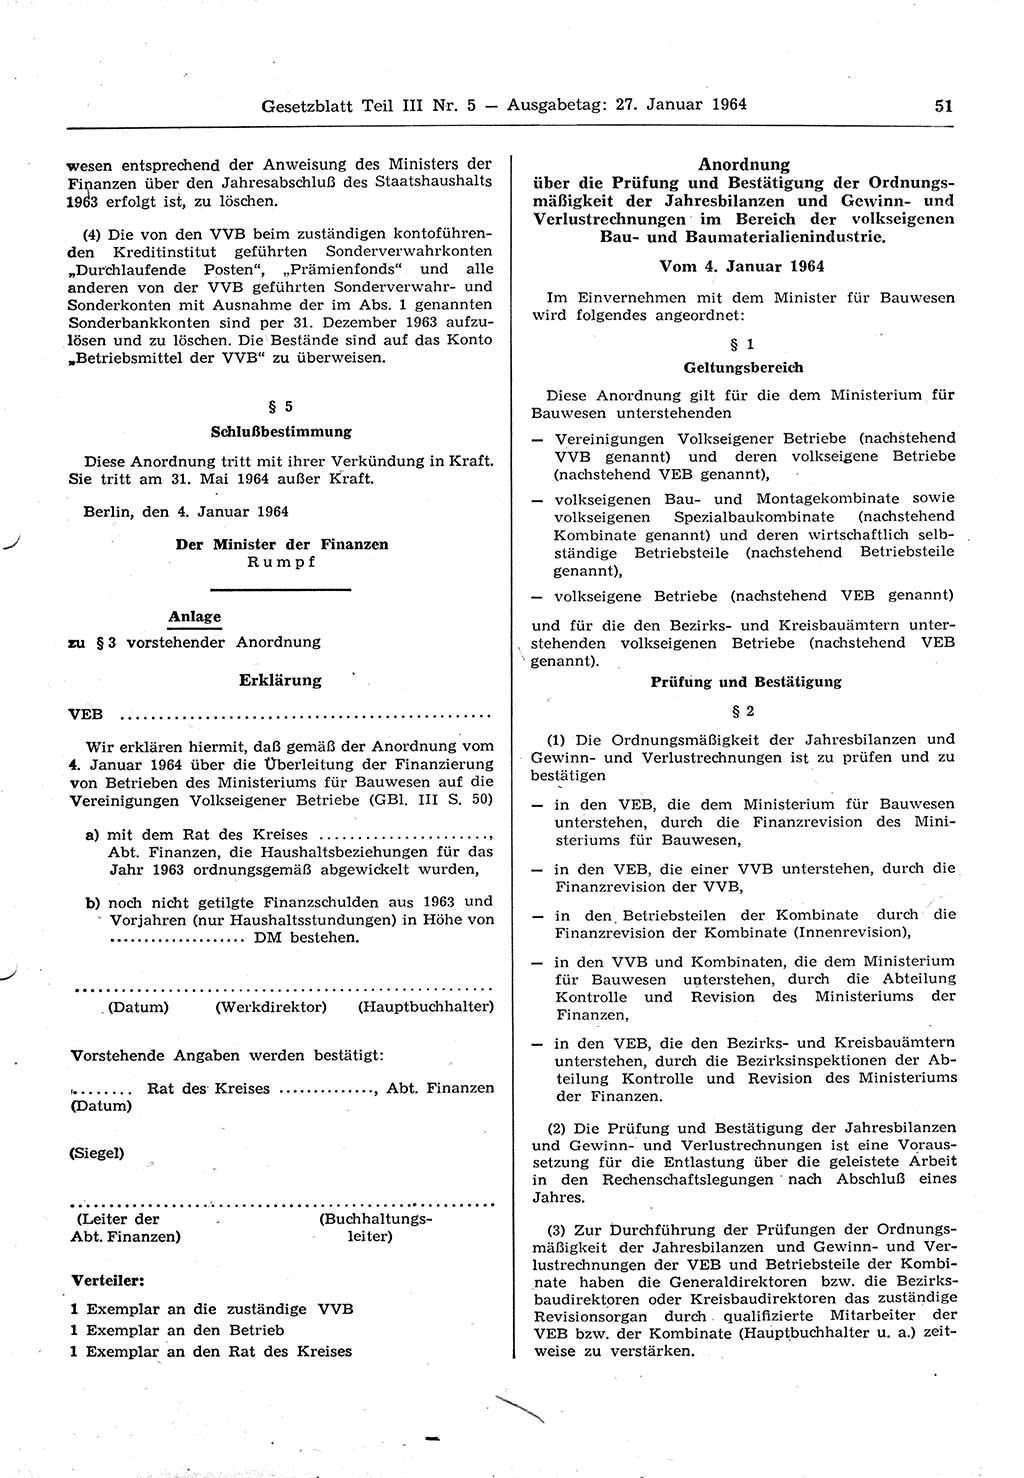 Gesetzblatt (GBl.) der Deutschen Demokratischen Republik (DDR) Teil ⅠⅠⅠ 1964, Seite 51 (GBl. DDR ⅠⅠⅠ 1964, S. 51)